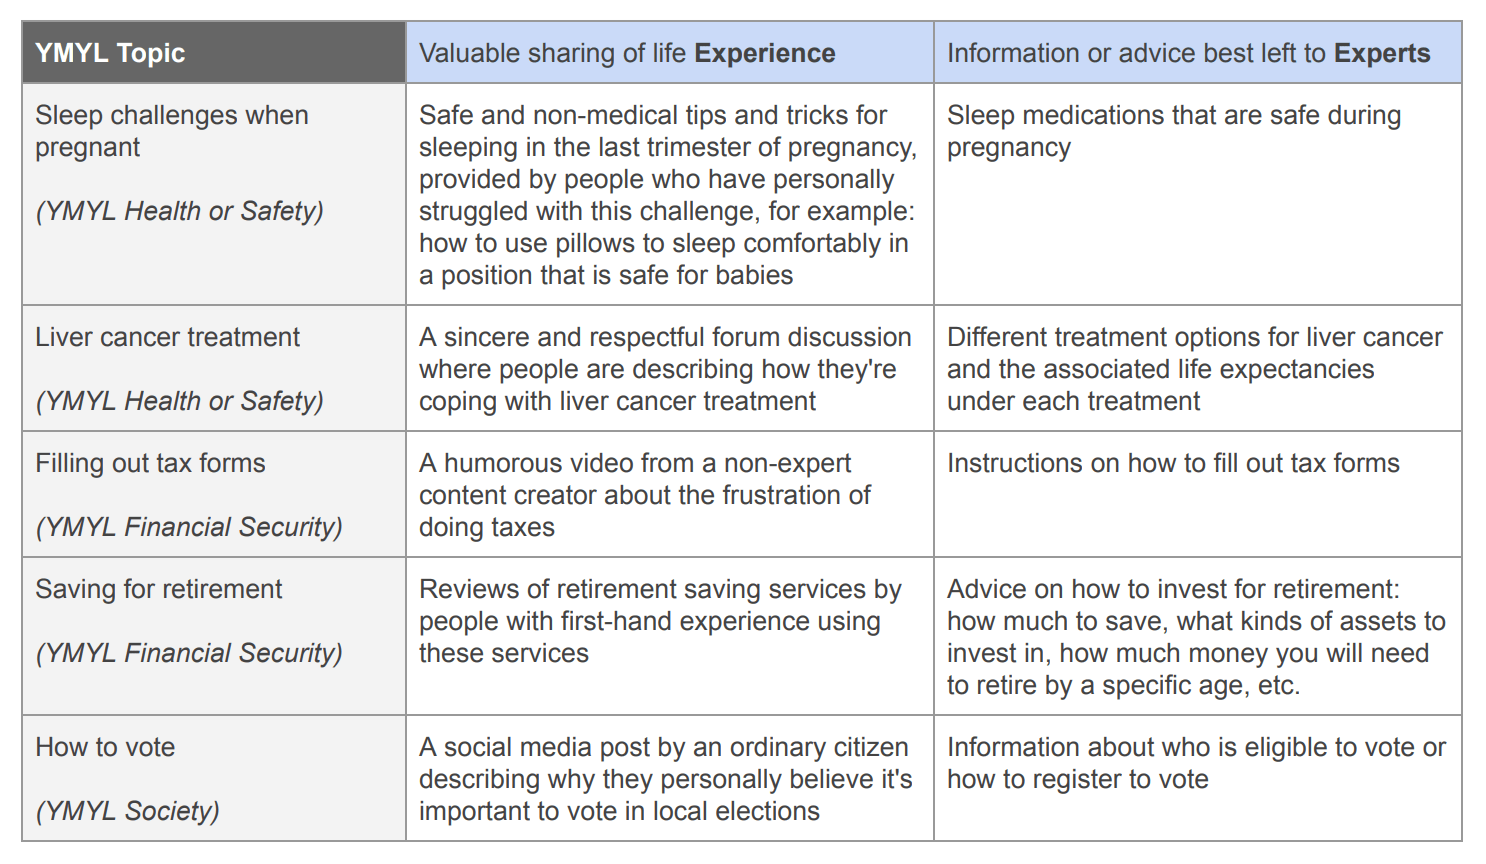 La diferencia entre experiencia y ser experto para los temas del YMYL